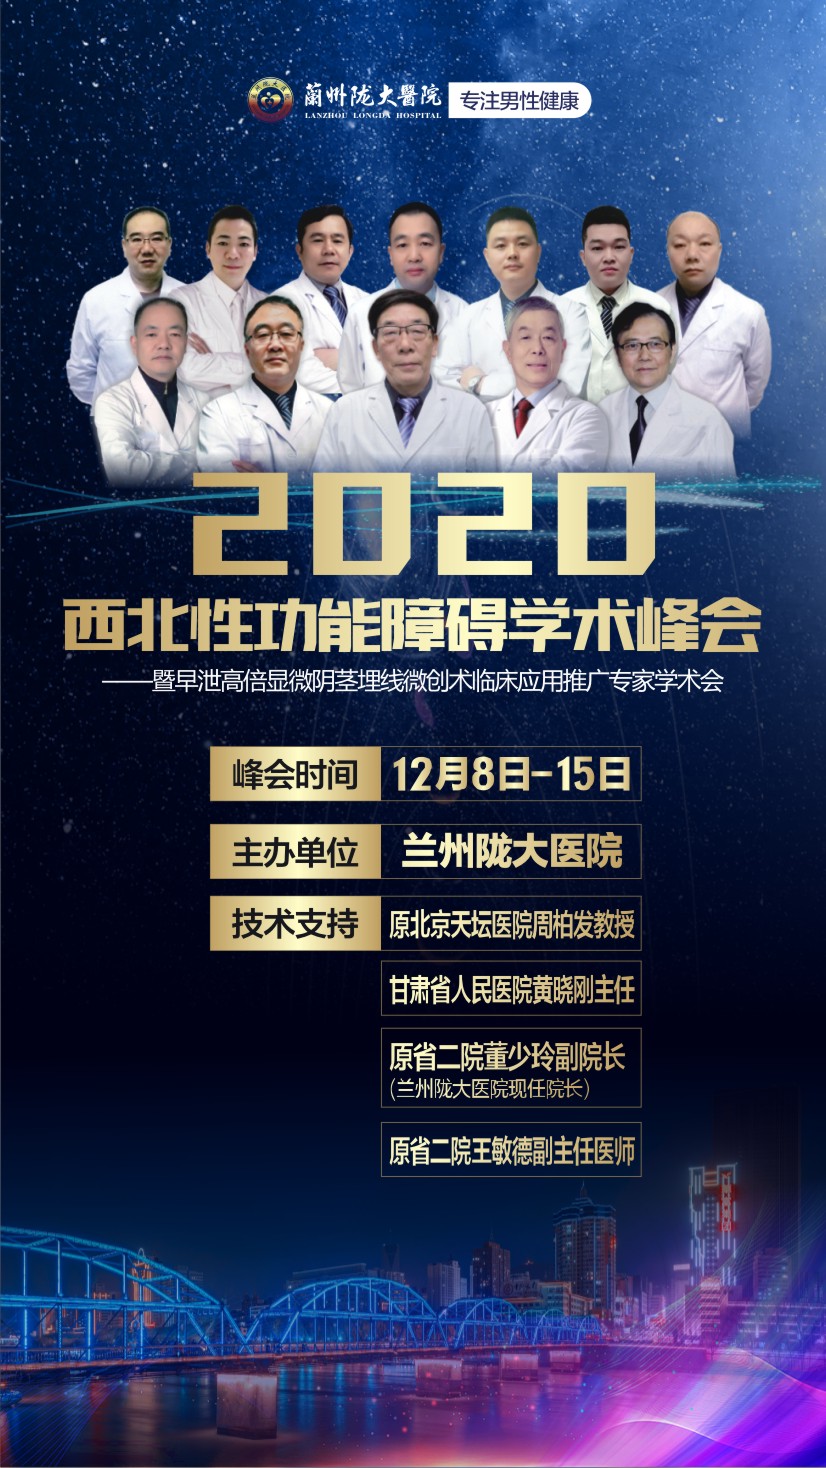 西北性功能障碍学术峰会 北京、甘肃三甲泌尿男科专家技术共享 全面推进男科发展